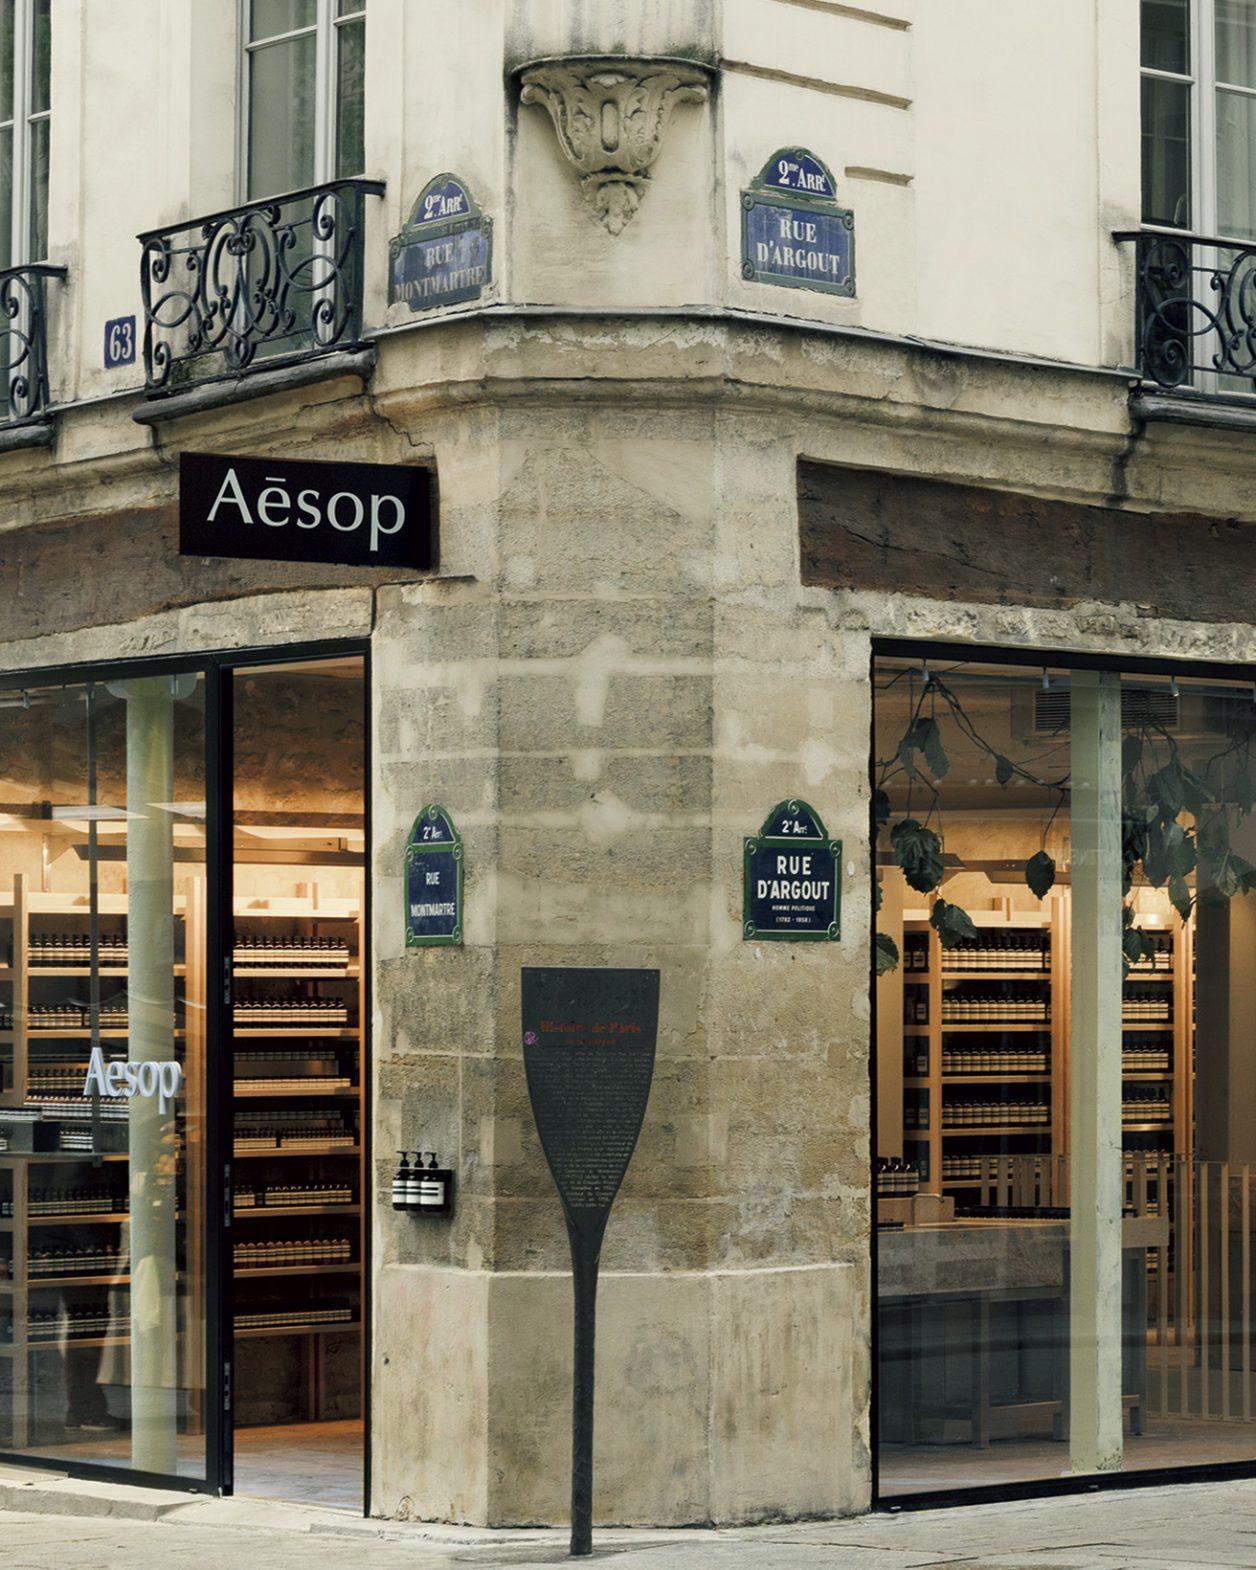 18世紀建築のスケルトンから発想した、パリのイソップ最新店。